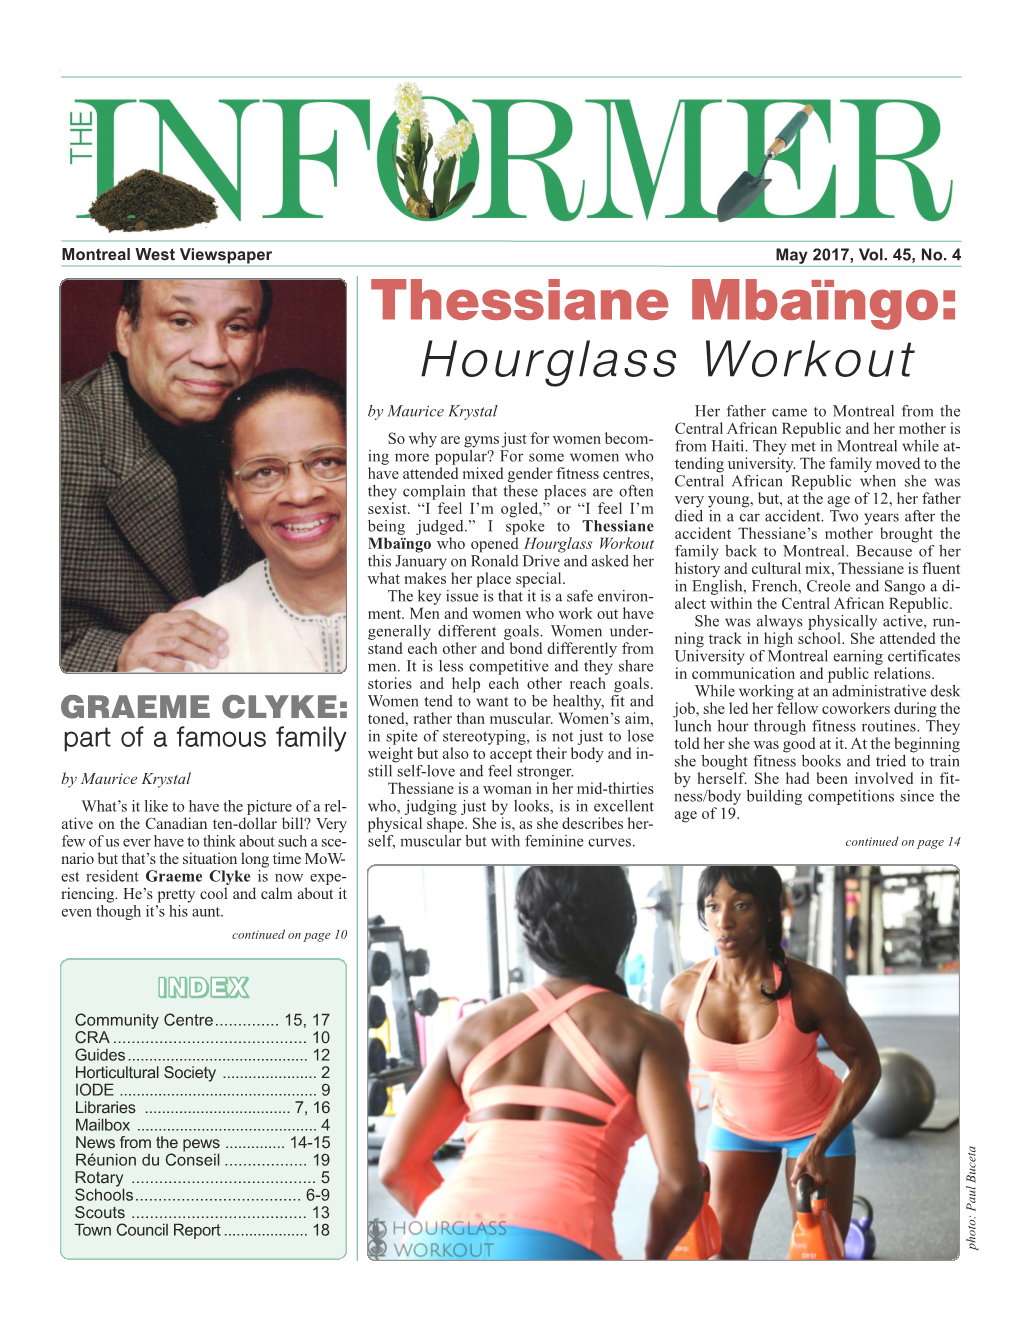 Thessiane Mbaïngo: Hourglass Workout